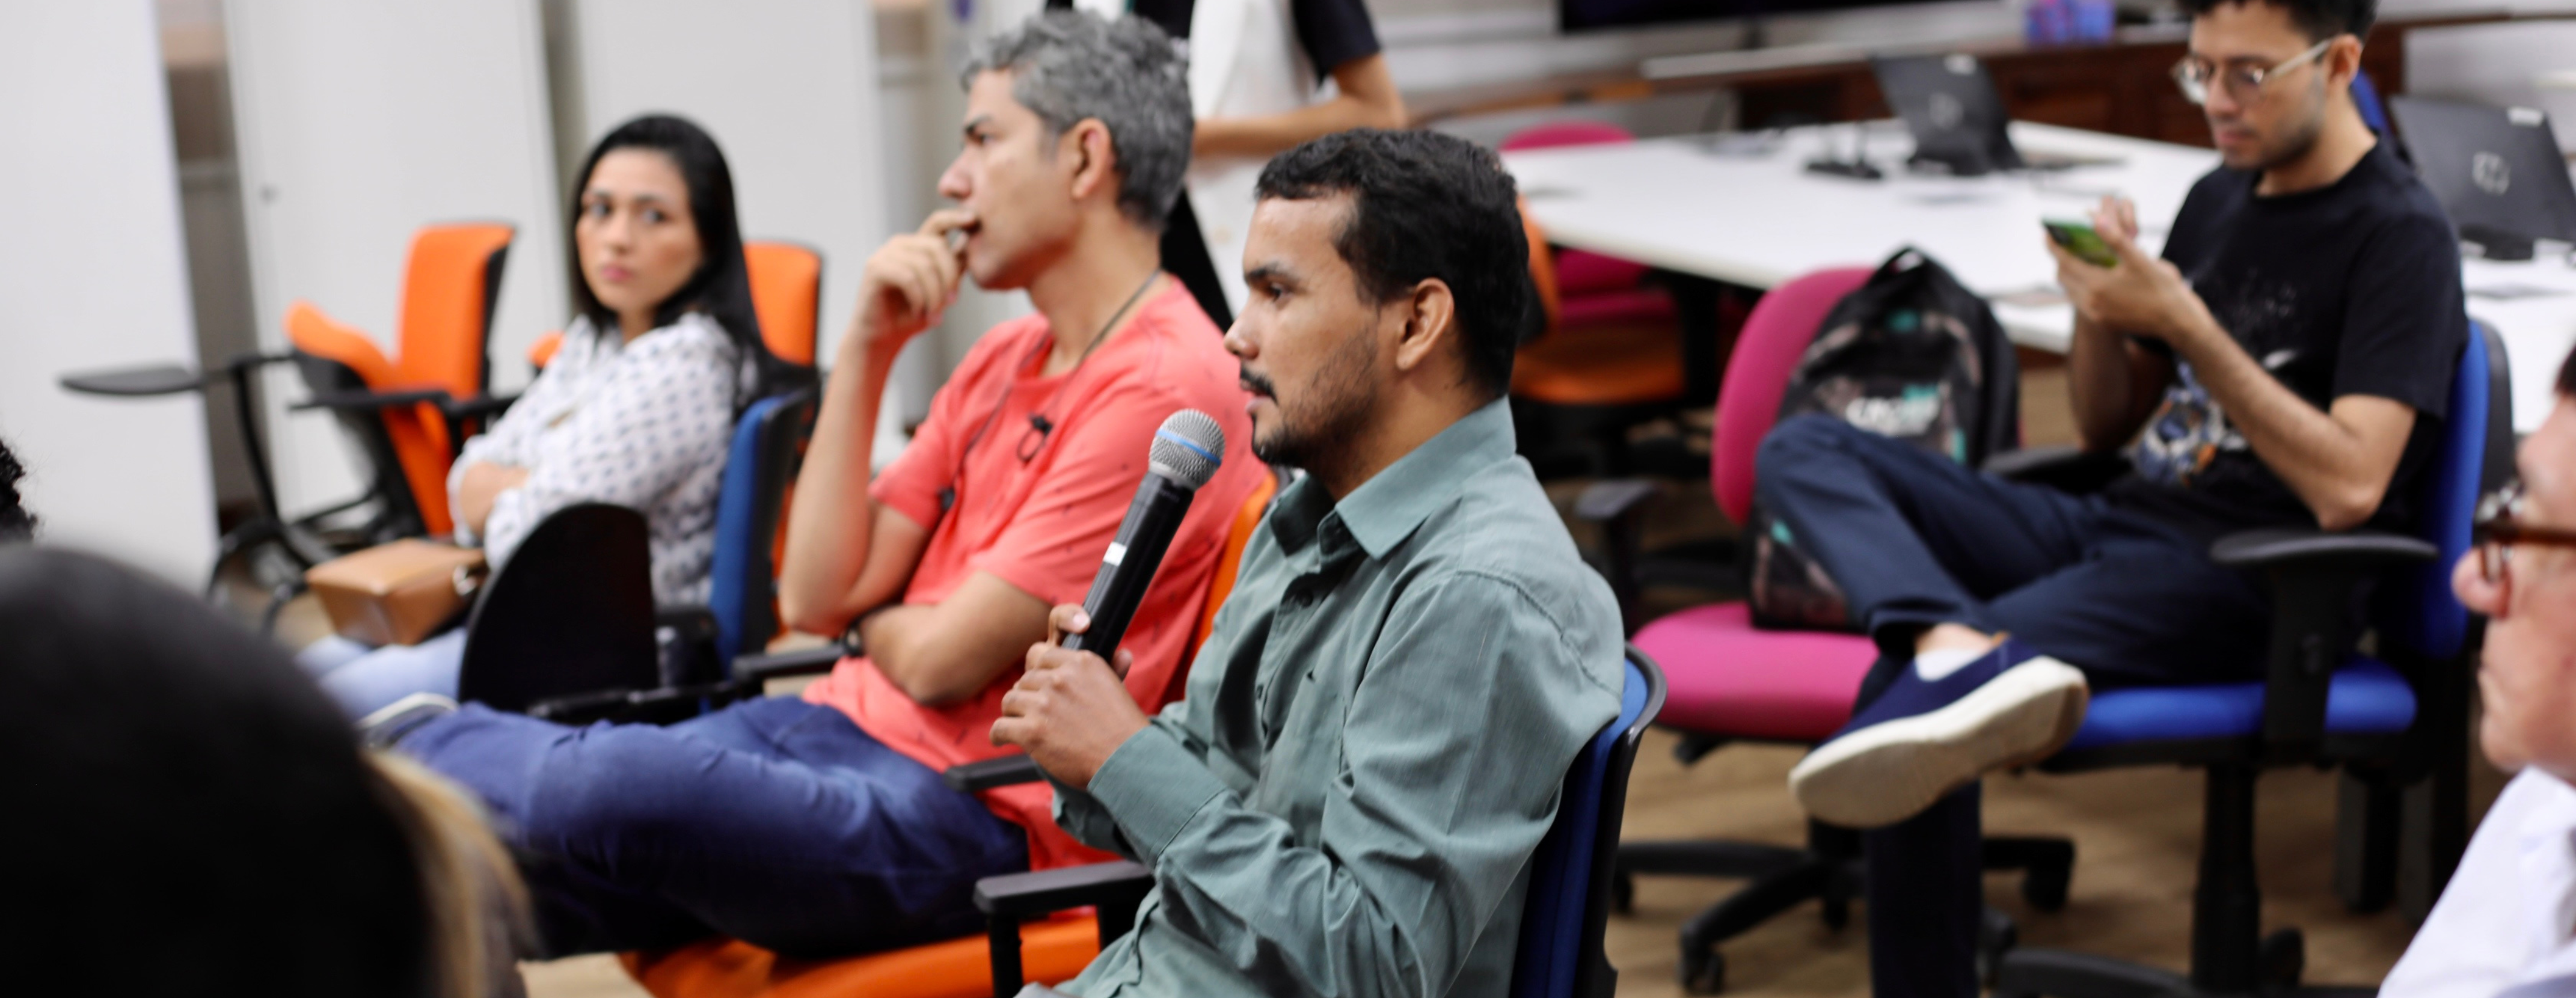 Ecoa Powered by InovAtiva, programa realizado pelo Manaus Tech Hub divulga as 25 startups selecionadas